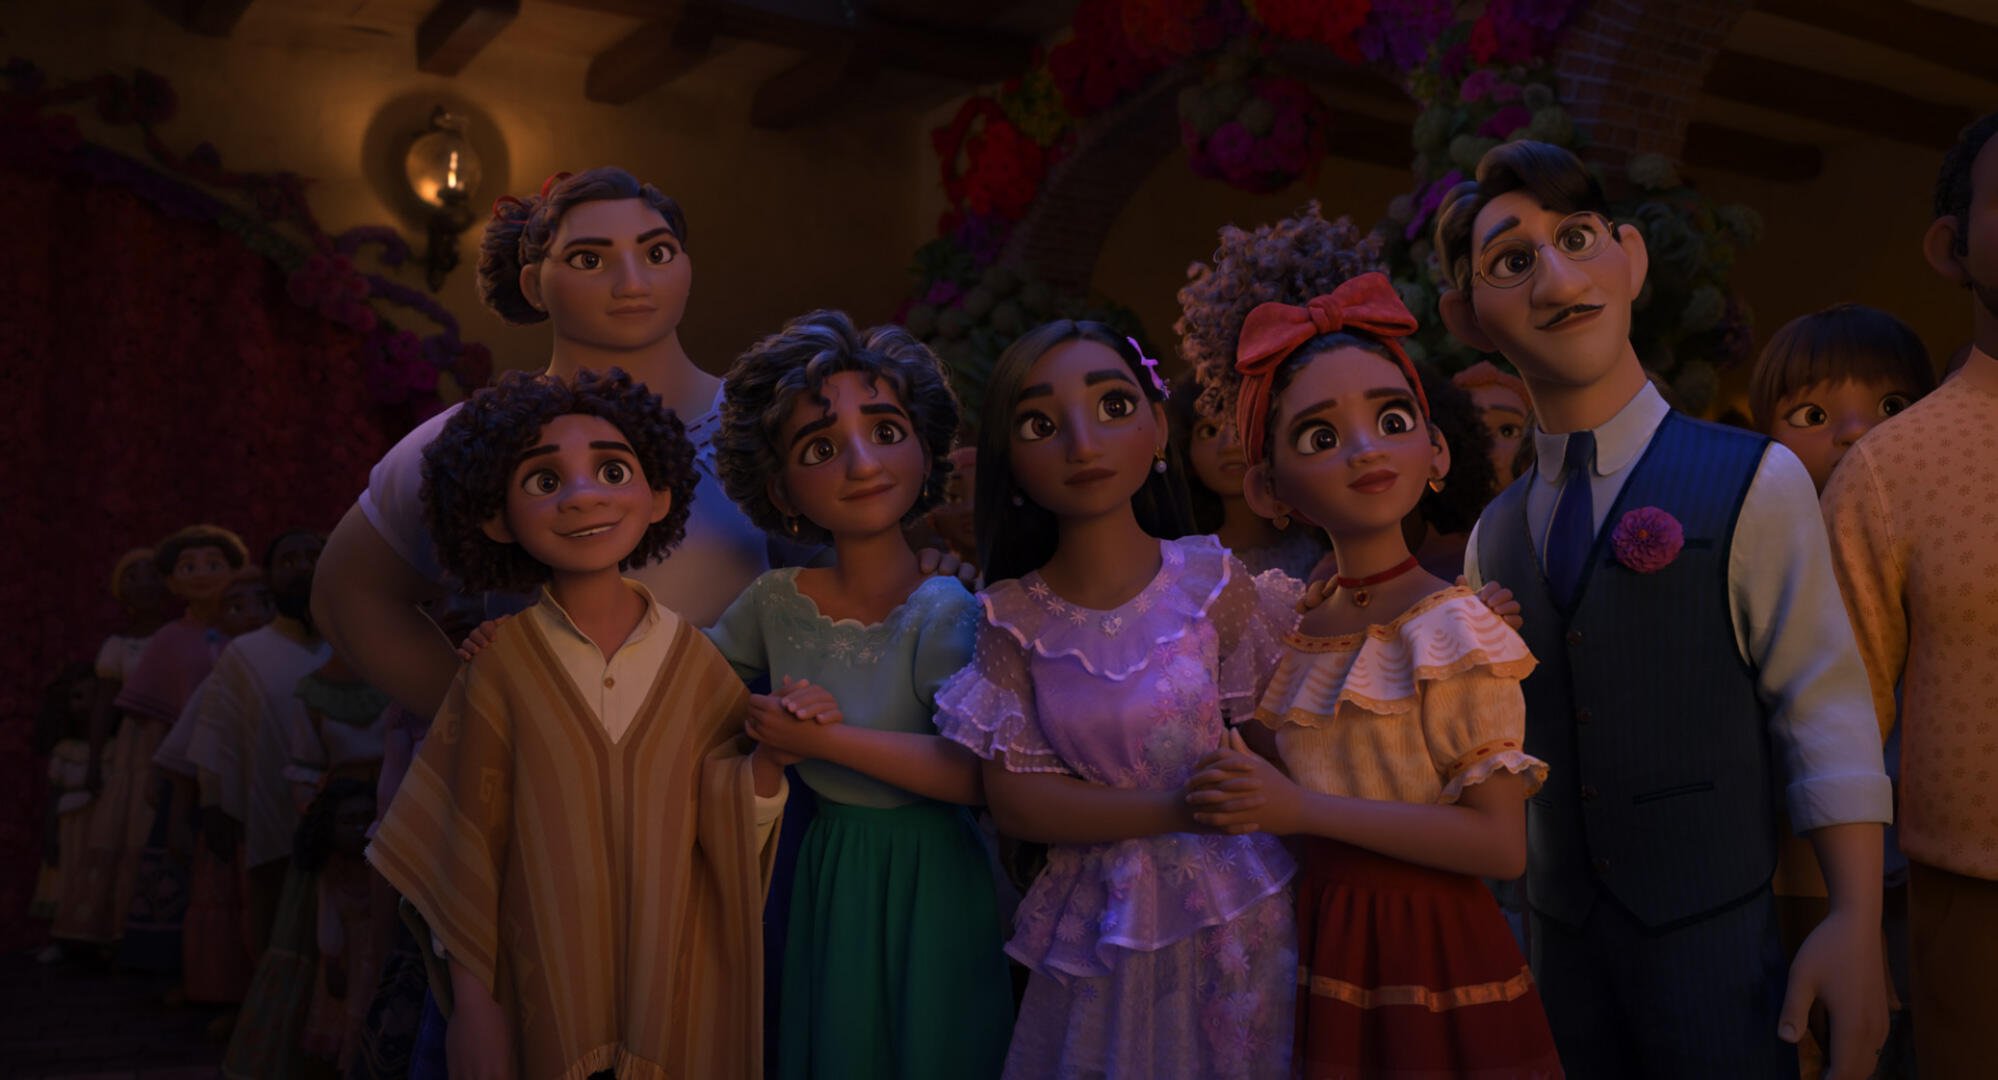 Los Madrigal, Luisa, Camilo, Julieta, Isabela, Dolores y Agustín, se paran juntos mirando algo fuera de campo.